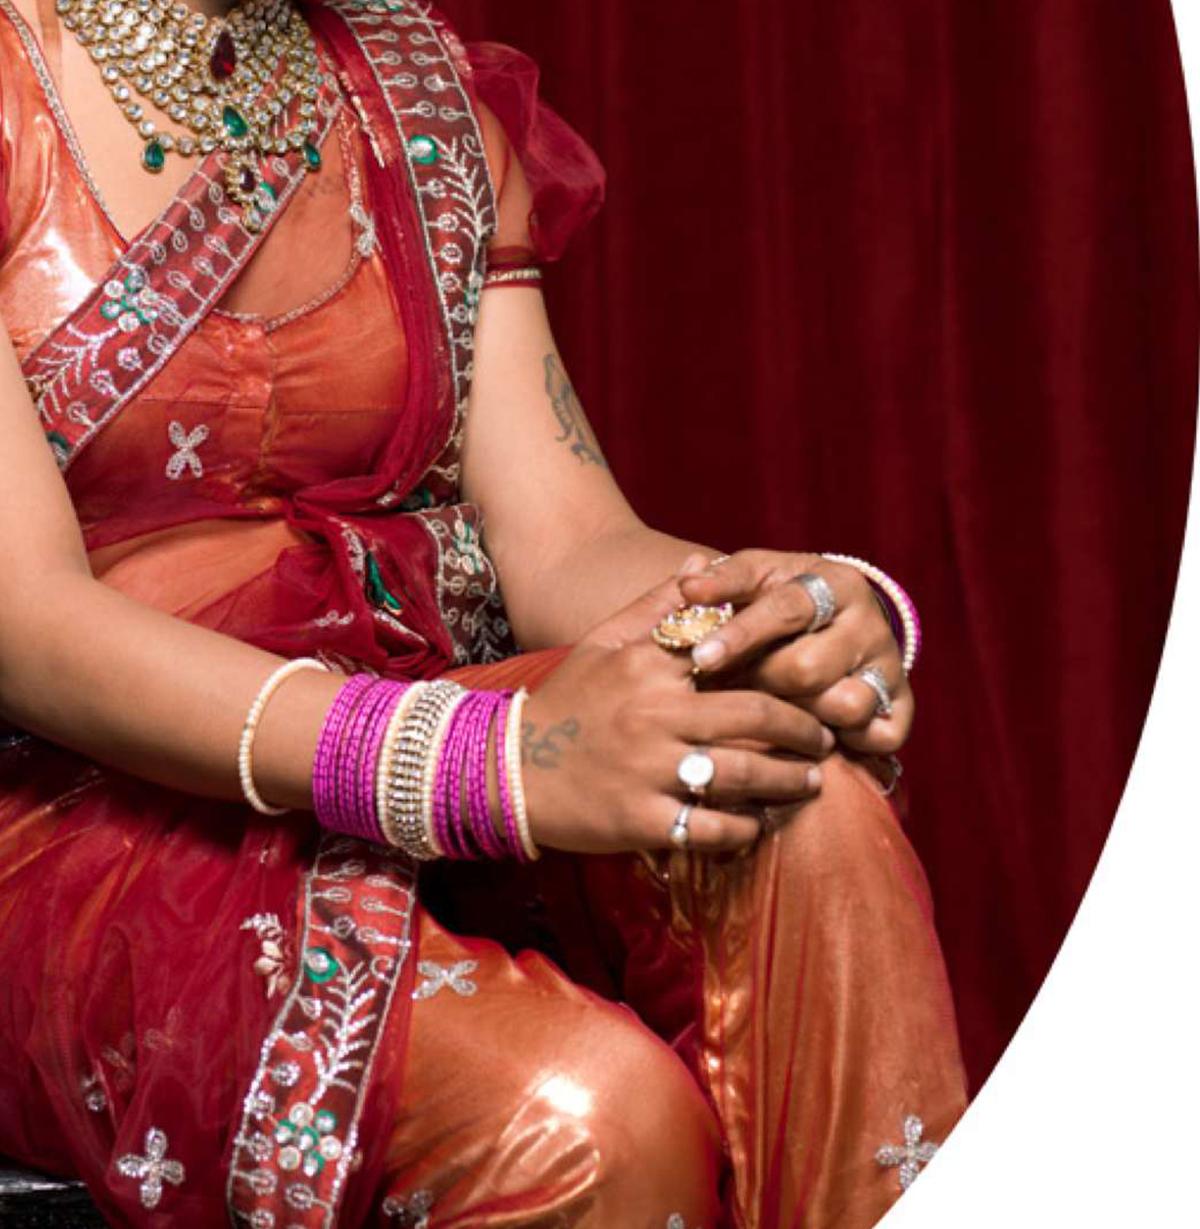 Shreya, Protrait. Aus der Serie The Third Gender of India (Moderne), Photograph, von Jill Peters